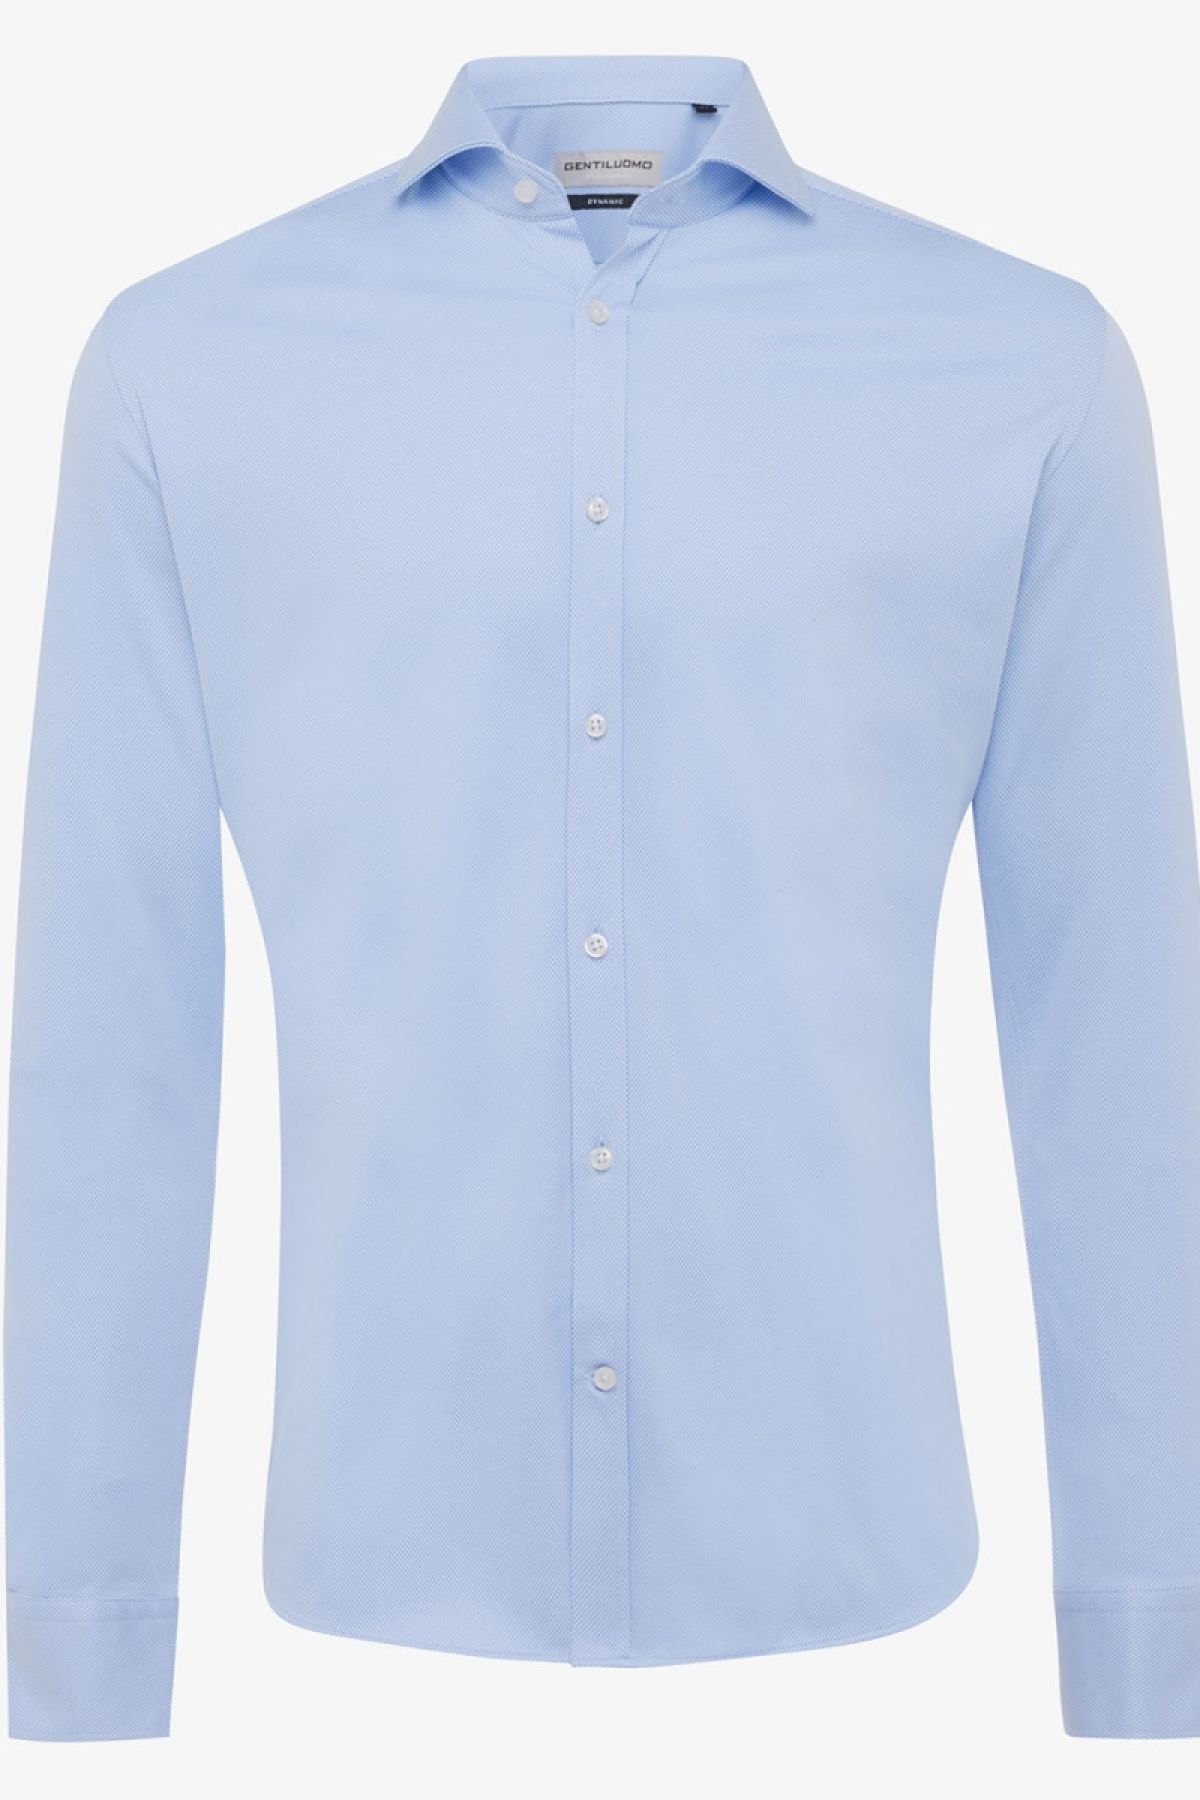 Dynamic overhemd fashion-fit lichtblauw